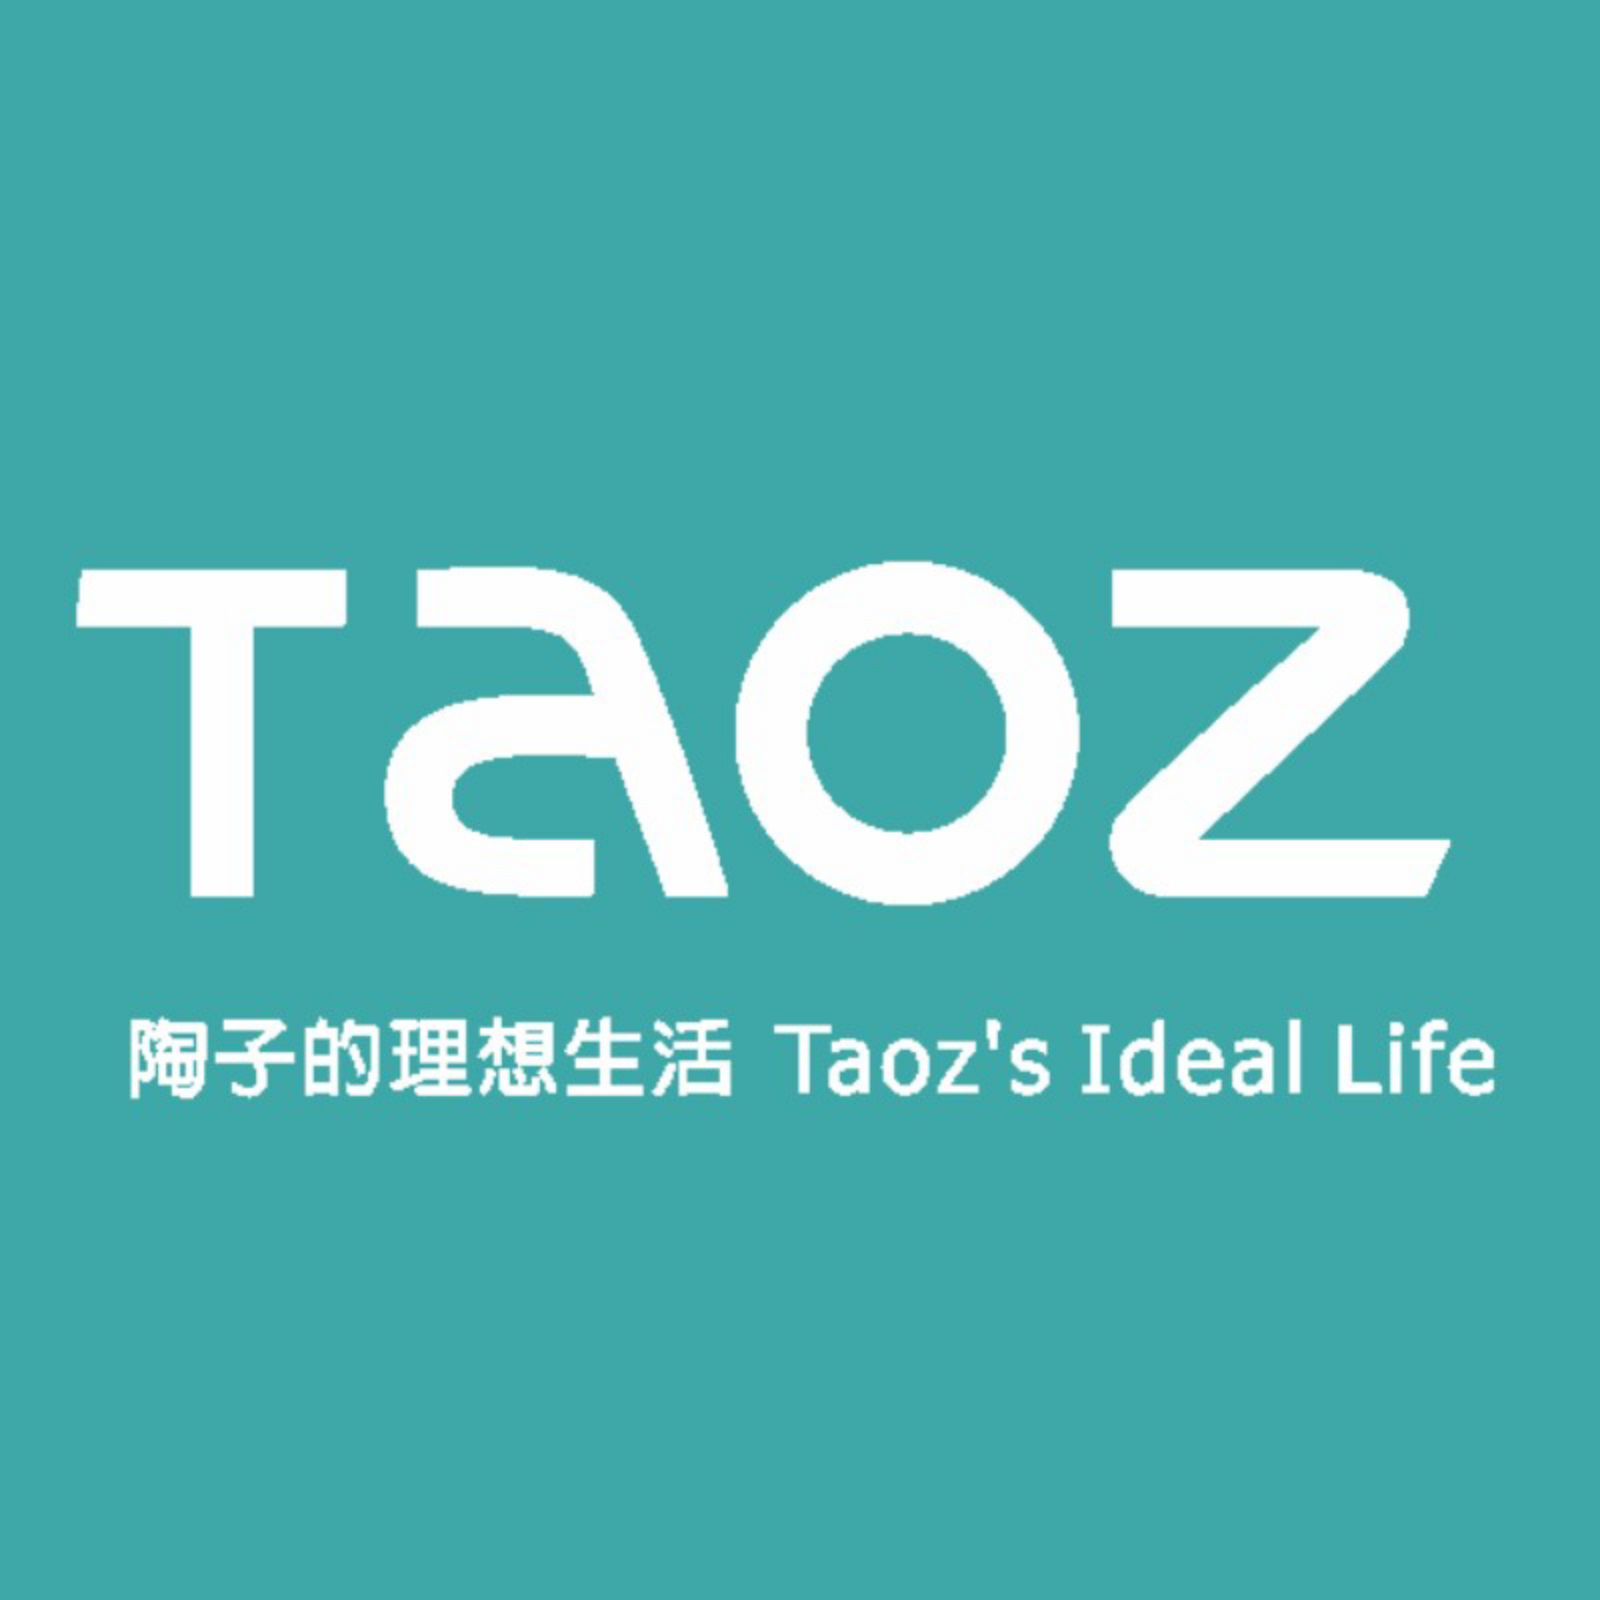 Taozs ideal life